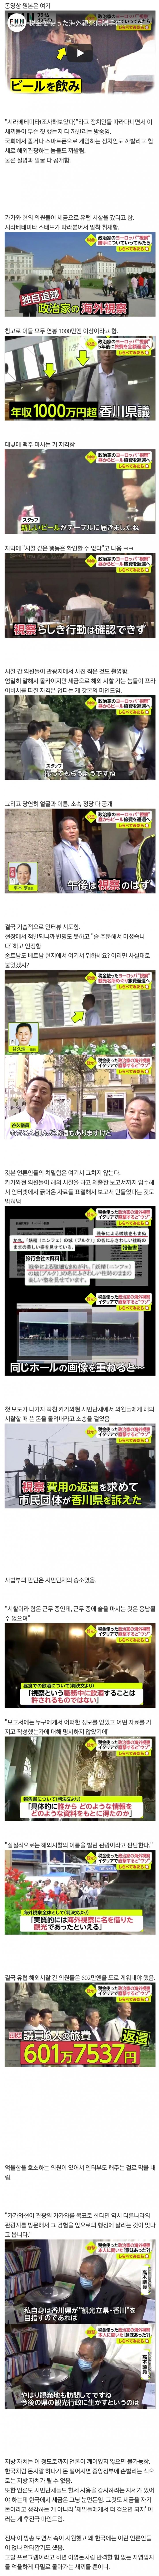 국내 도입이 시급한 일본 방송